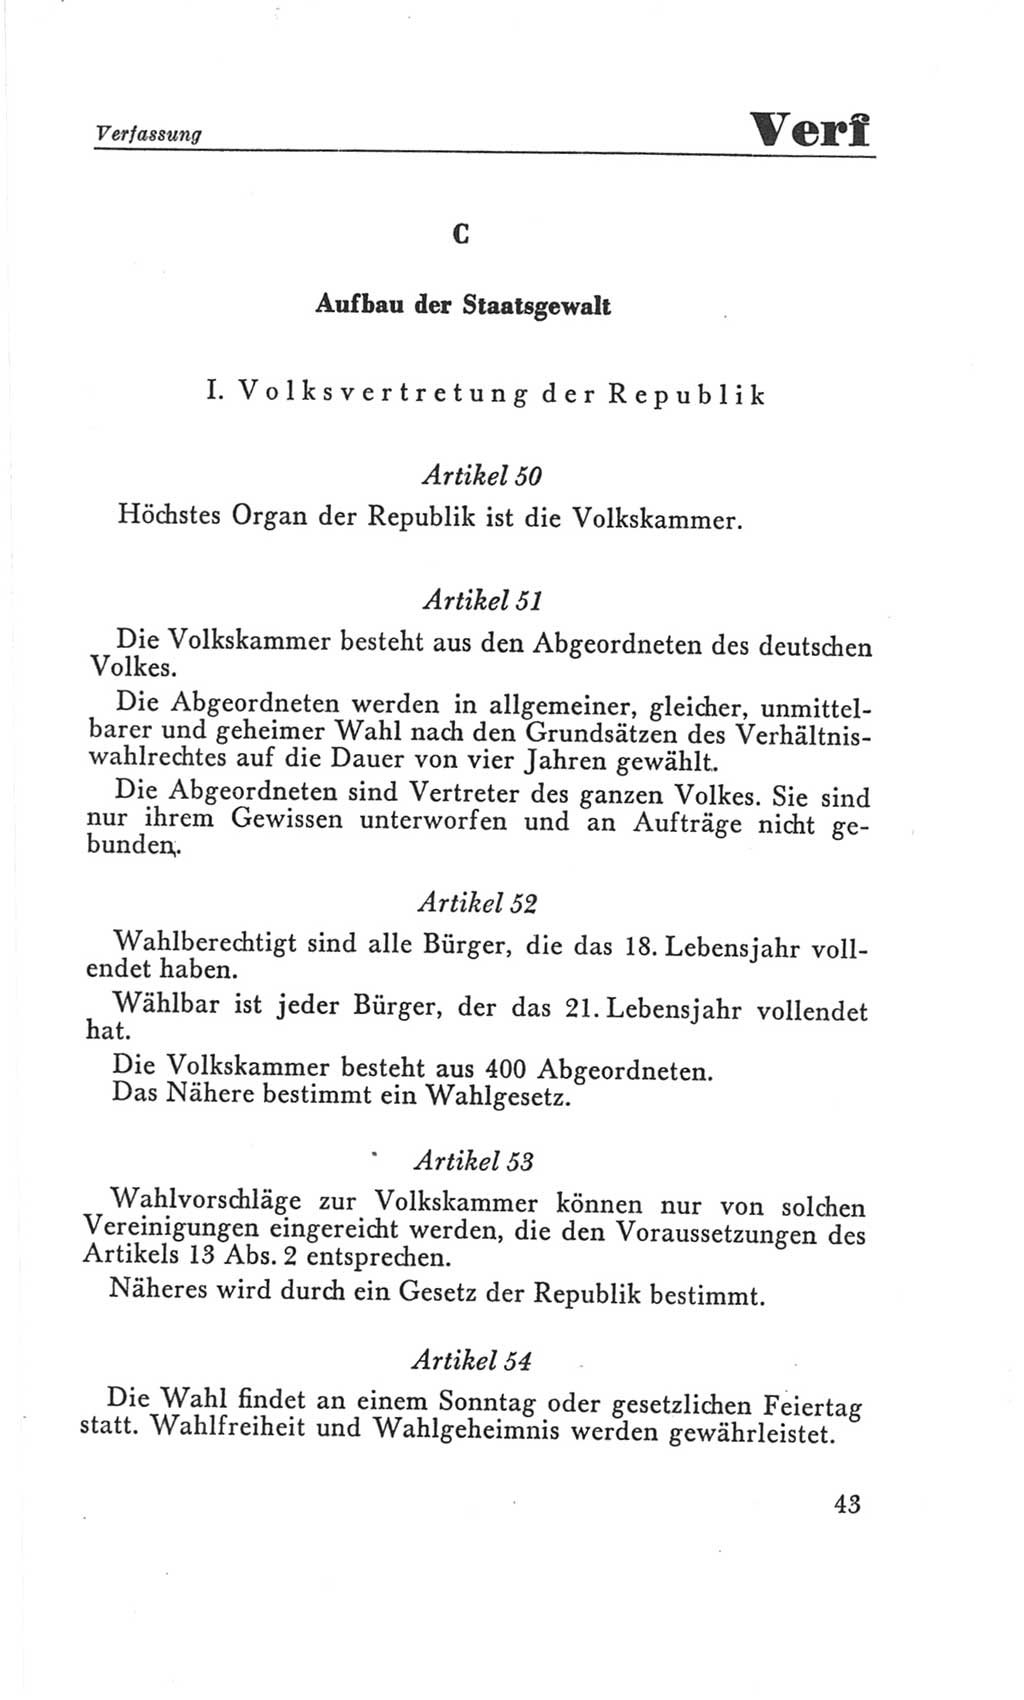 Handbuch der Volkskammer (VK) der Deutschen Demokratischen Republik (DDR), 3. Wahlperiode 1958-1963, Seite 43 (Hdb. VK. DDR 3. WP. 1958-1963, S. 43)